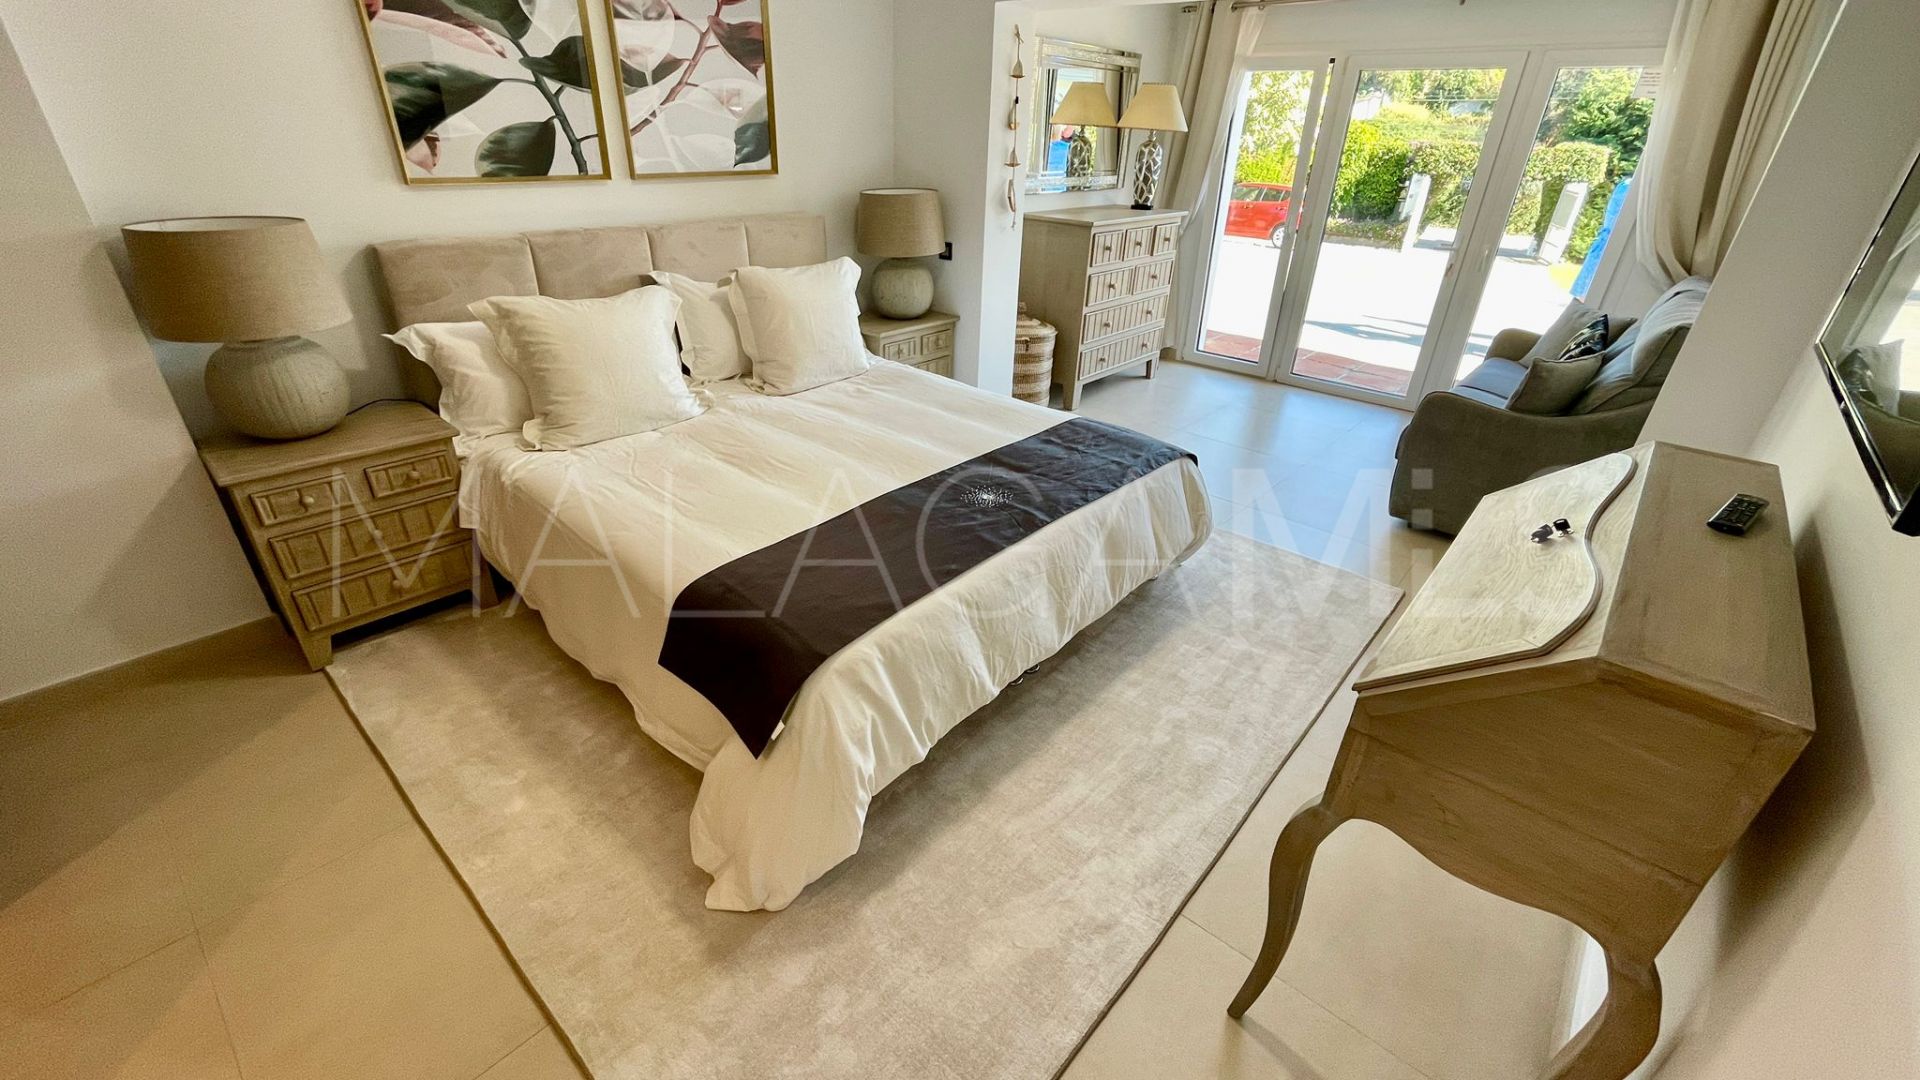 8 bedrooms villa in San Pedro de Alcantara for sale